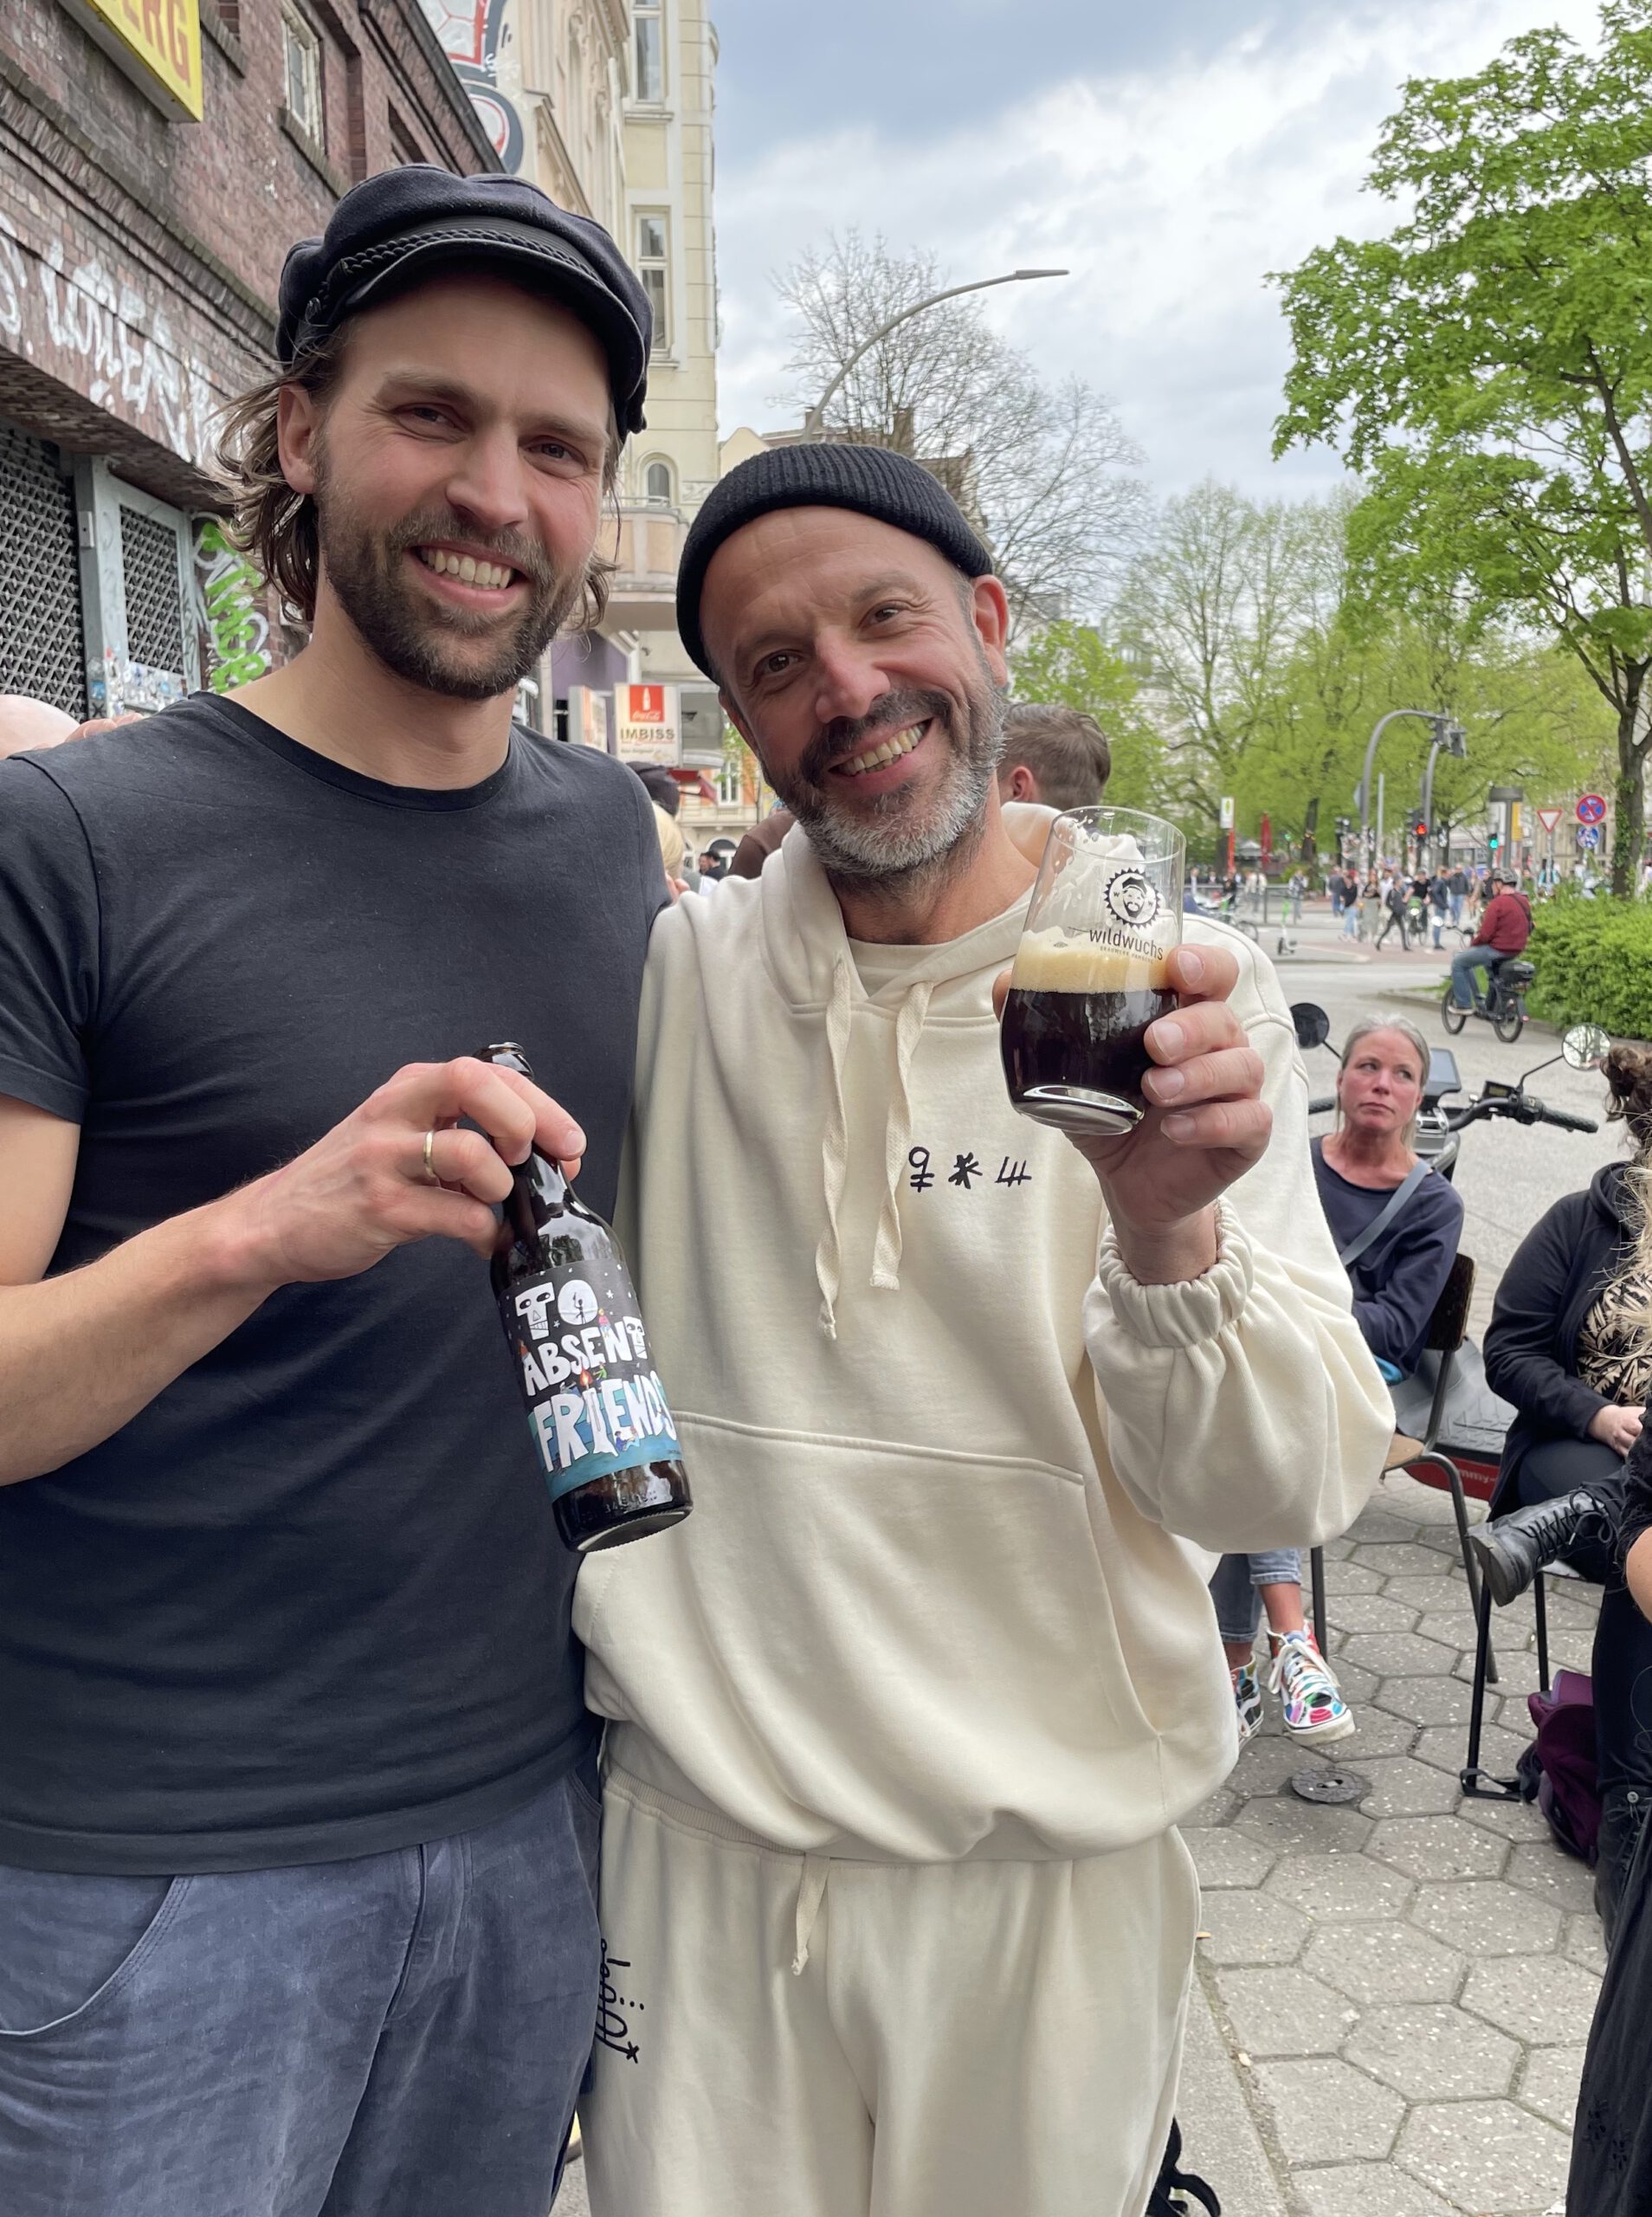 Jan Plewka und Fiete von Wildwuchs zeigen ihr Bier